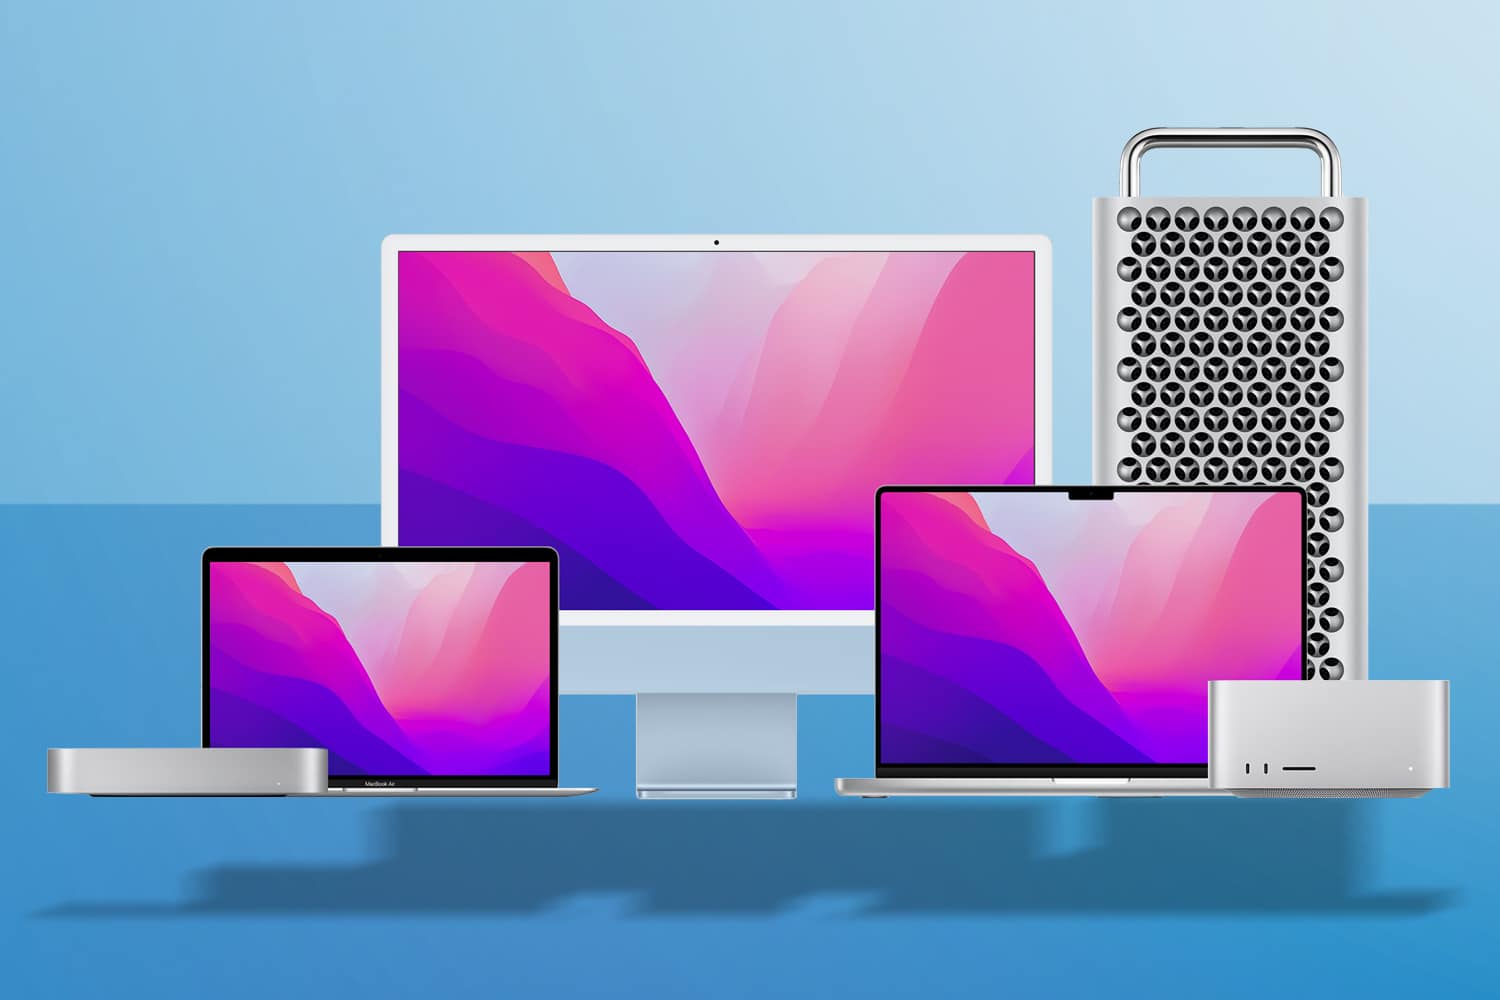 MacBook Pro, MacBook Air, Mac Mini, Mac Pro and iMac